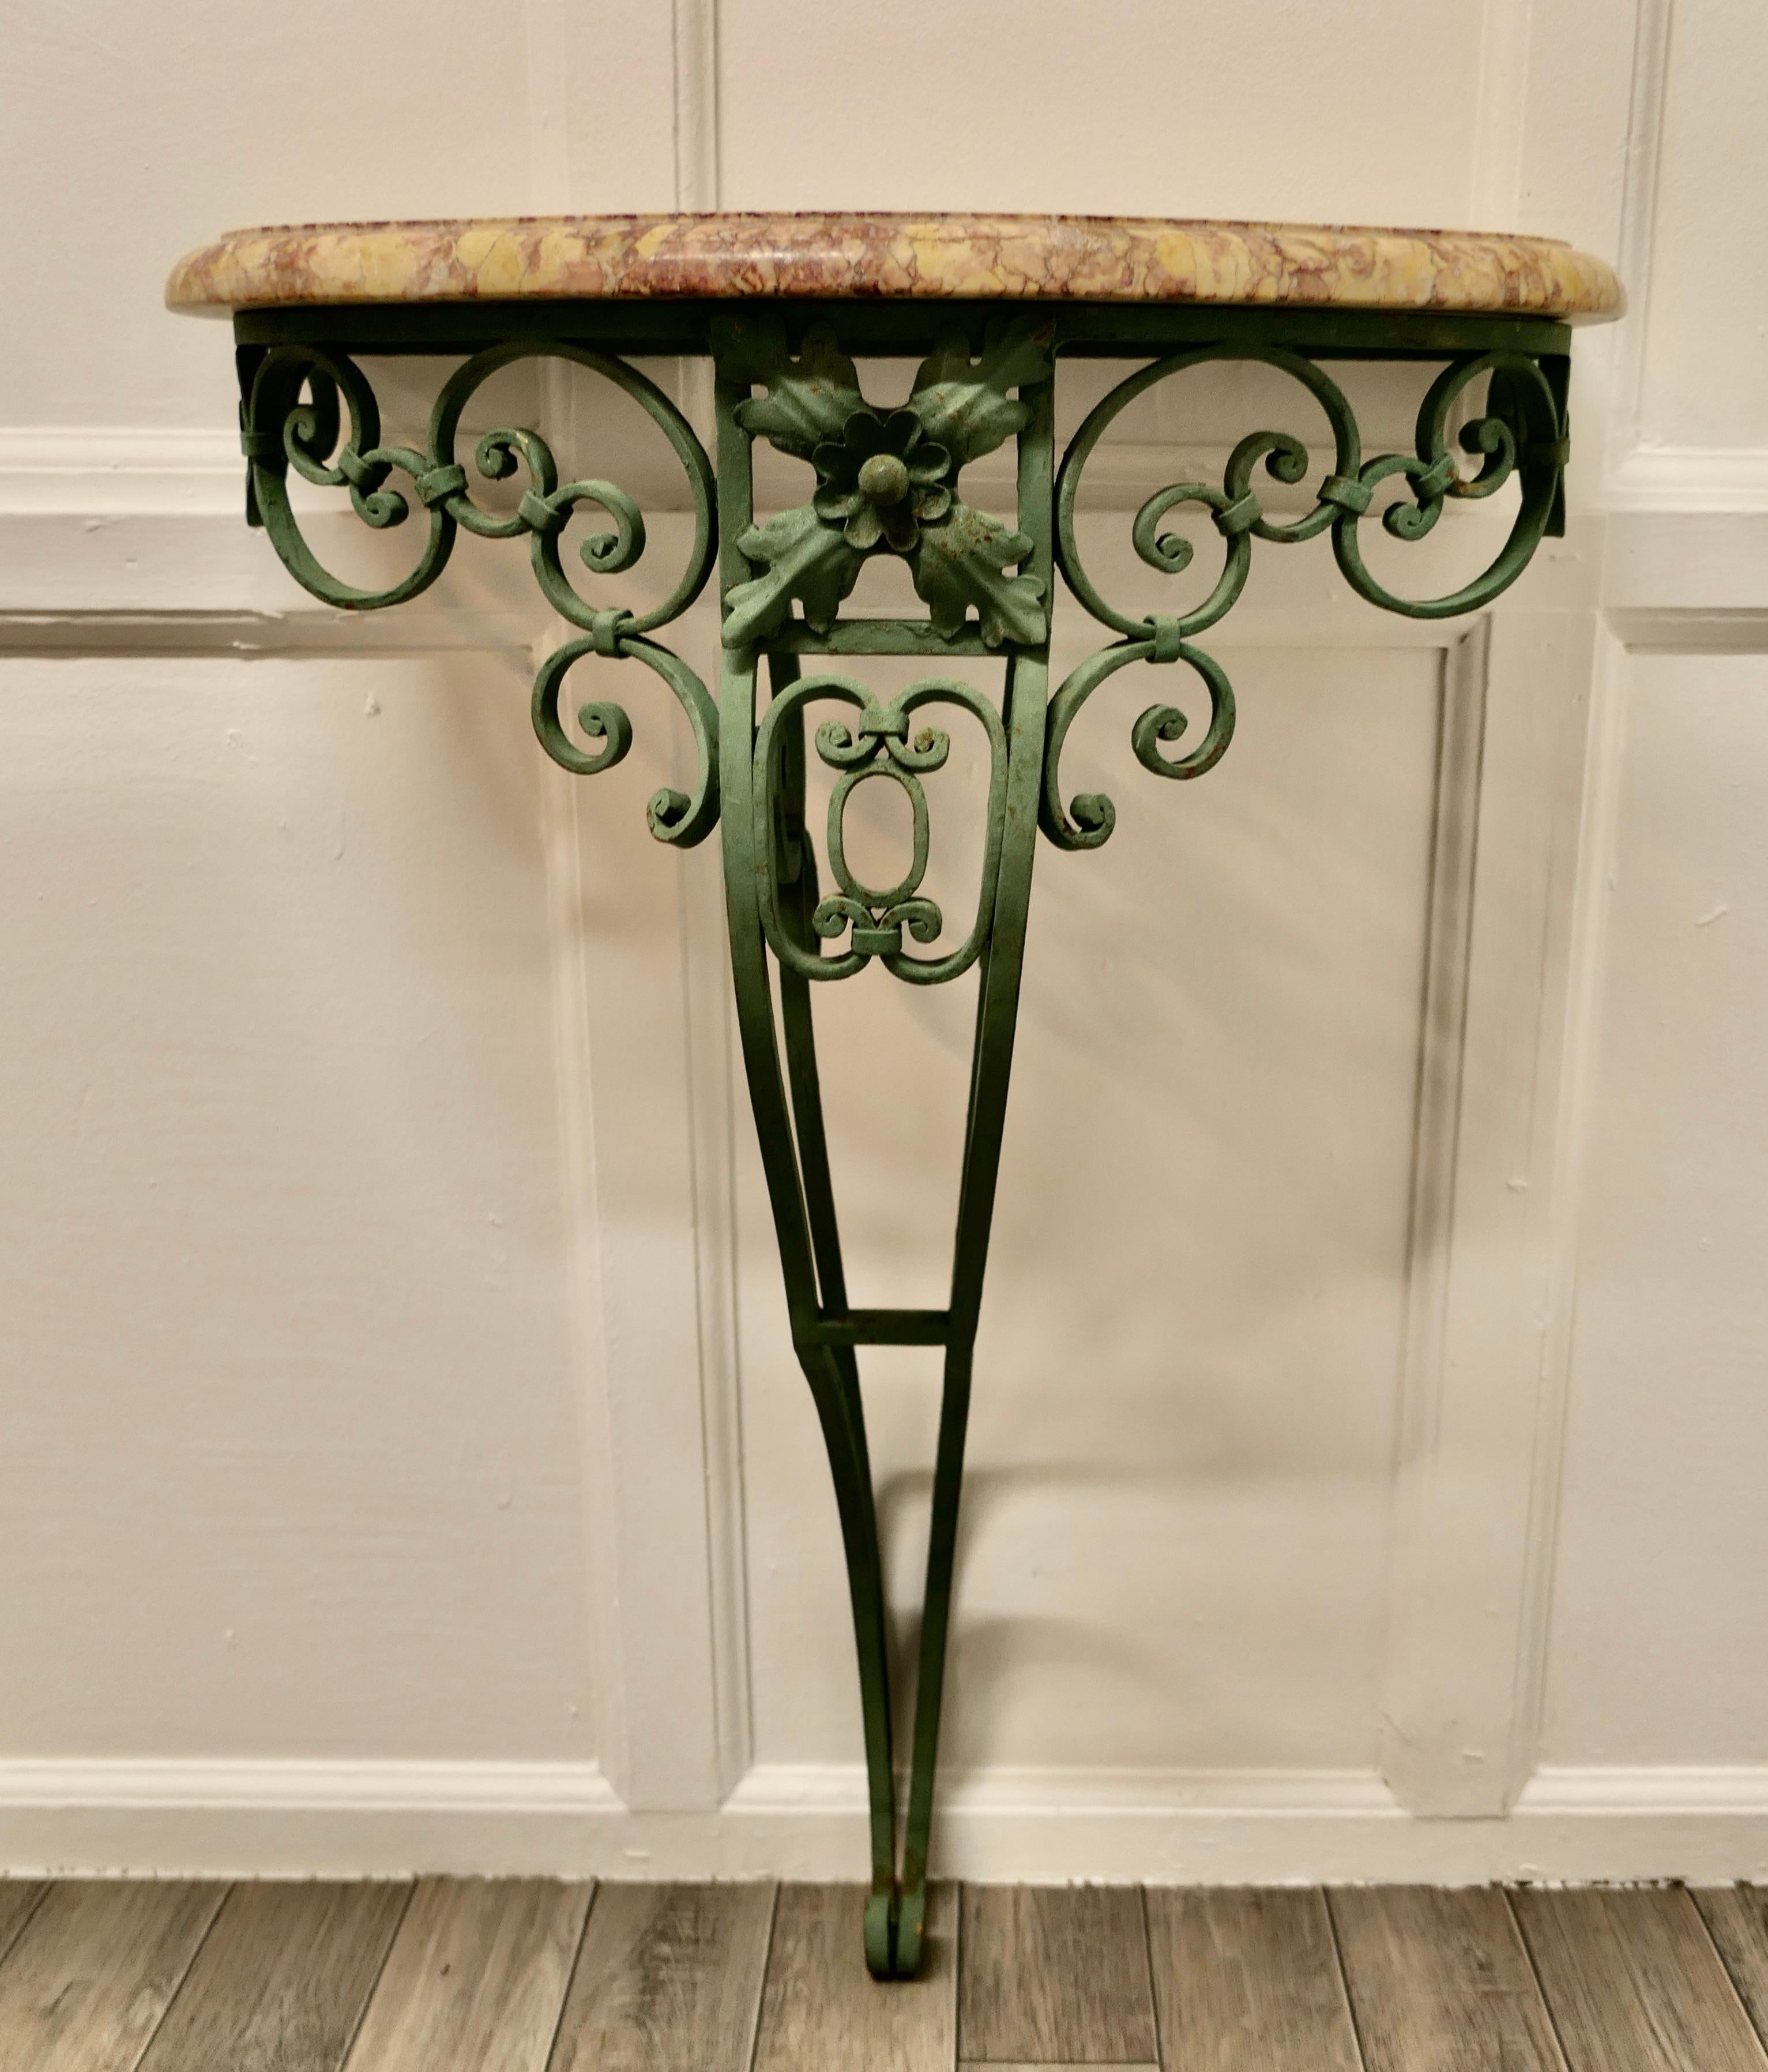 Ancienne console ou table d'entrée en fer forgé et marbre français

Il s'agit d'une pièce très attrayante, la table est ornée de volutes décoratives et de coquillages sur le pied en fer, qui est d'un vert mousse en désuétude.
Le plateau de la table